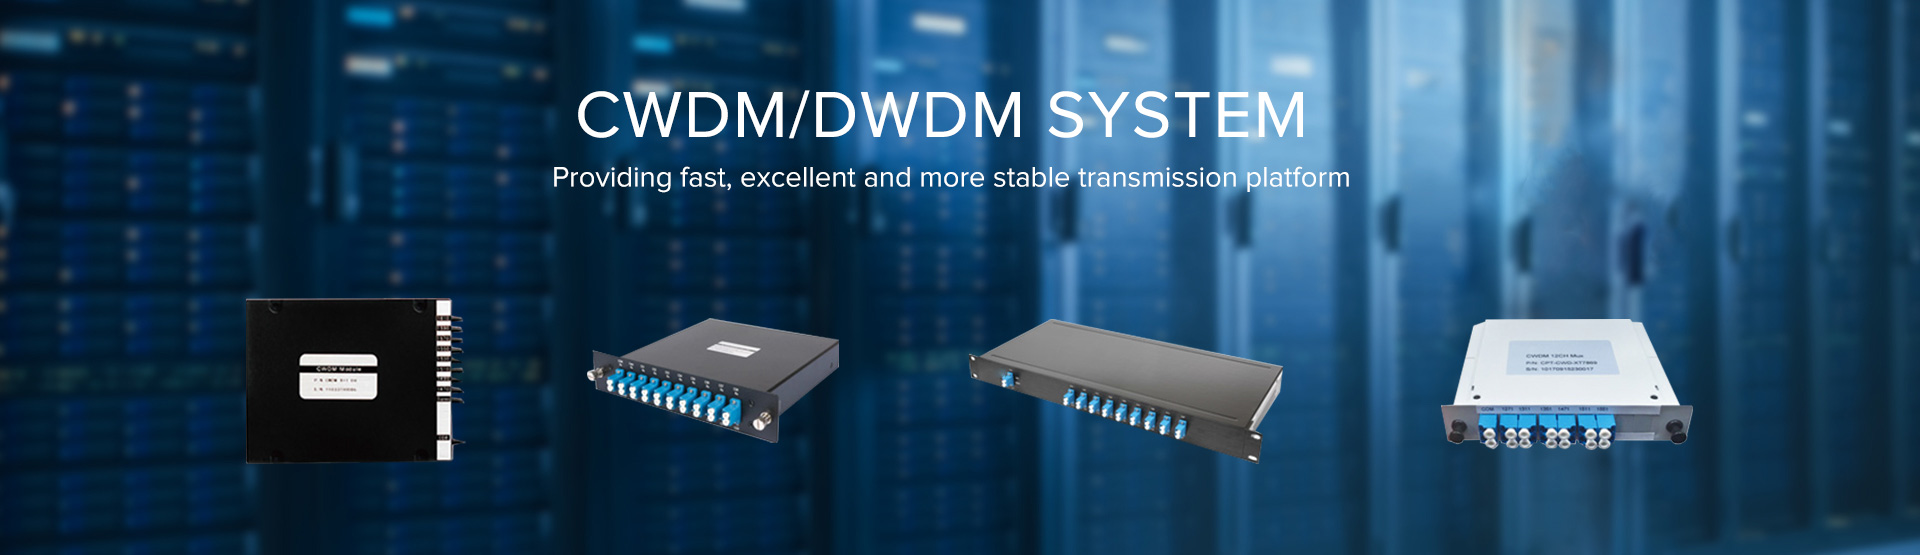 CWDM/DWDM SYSTEM